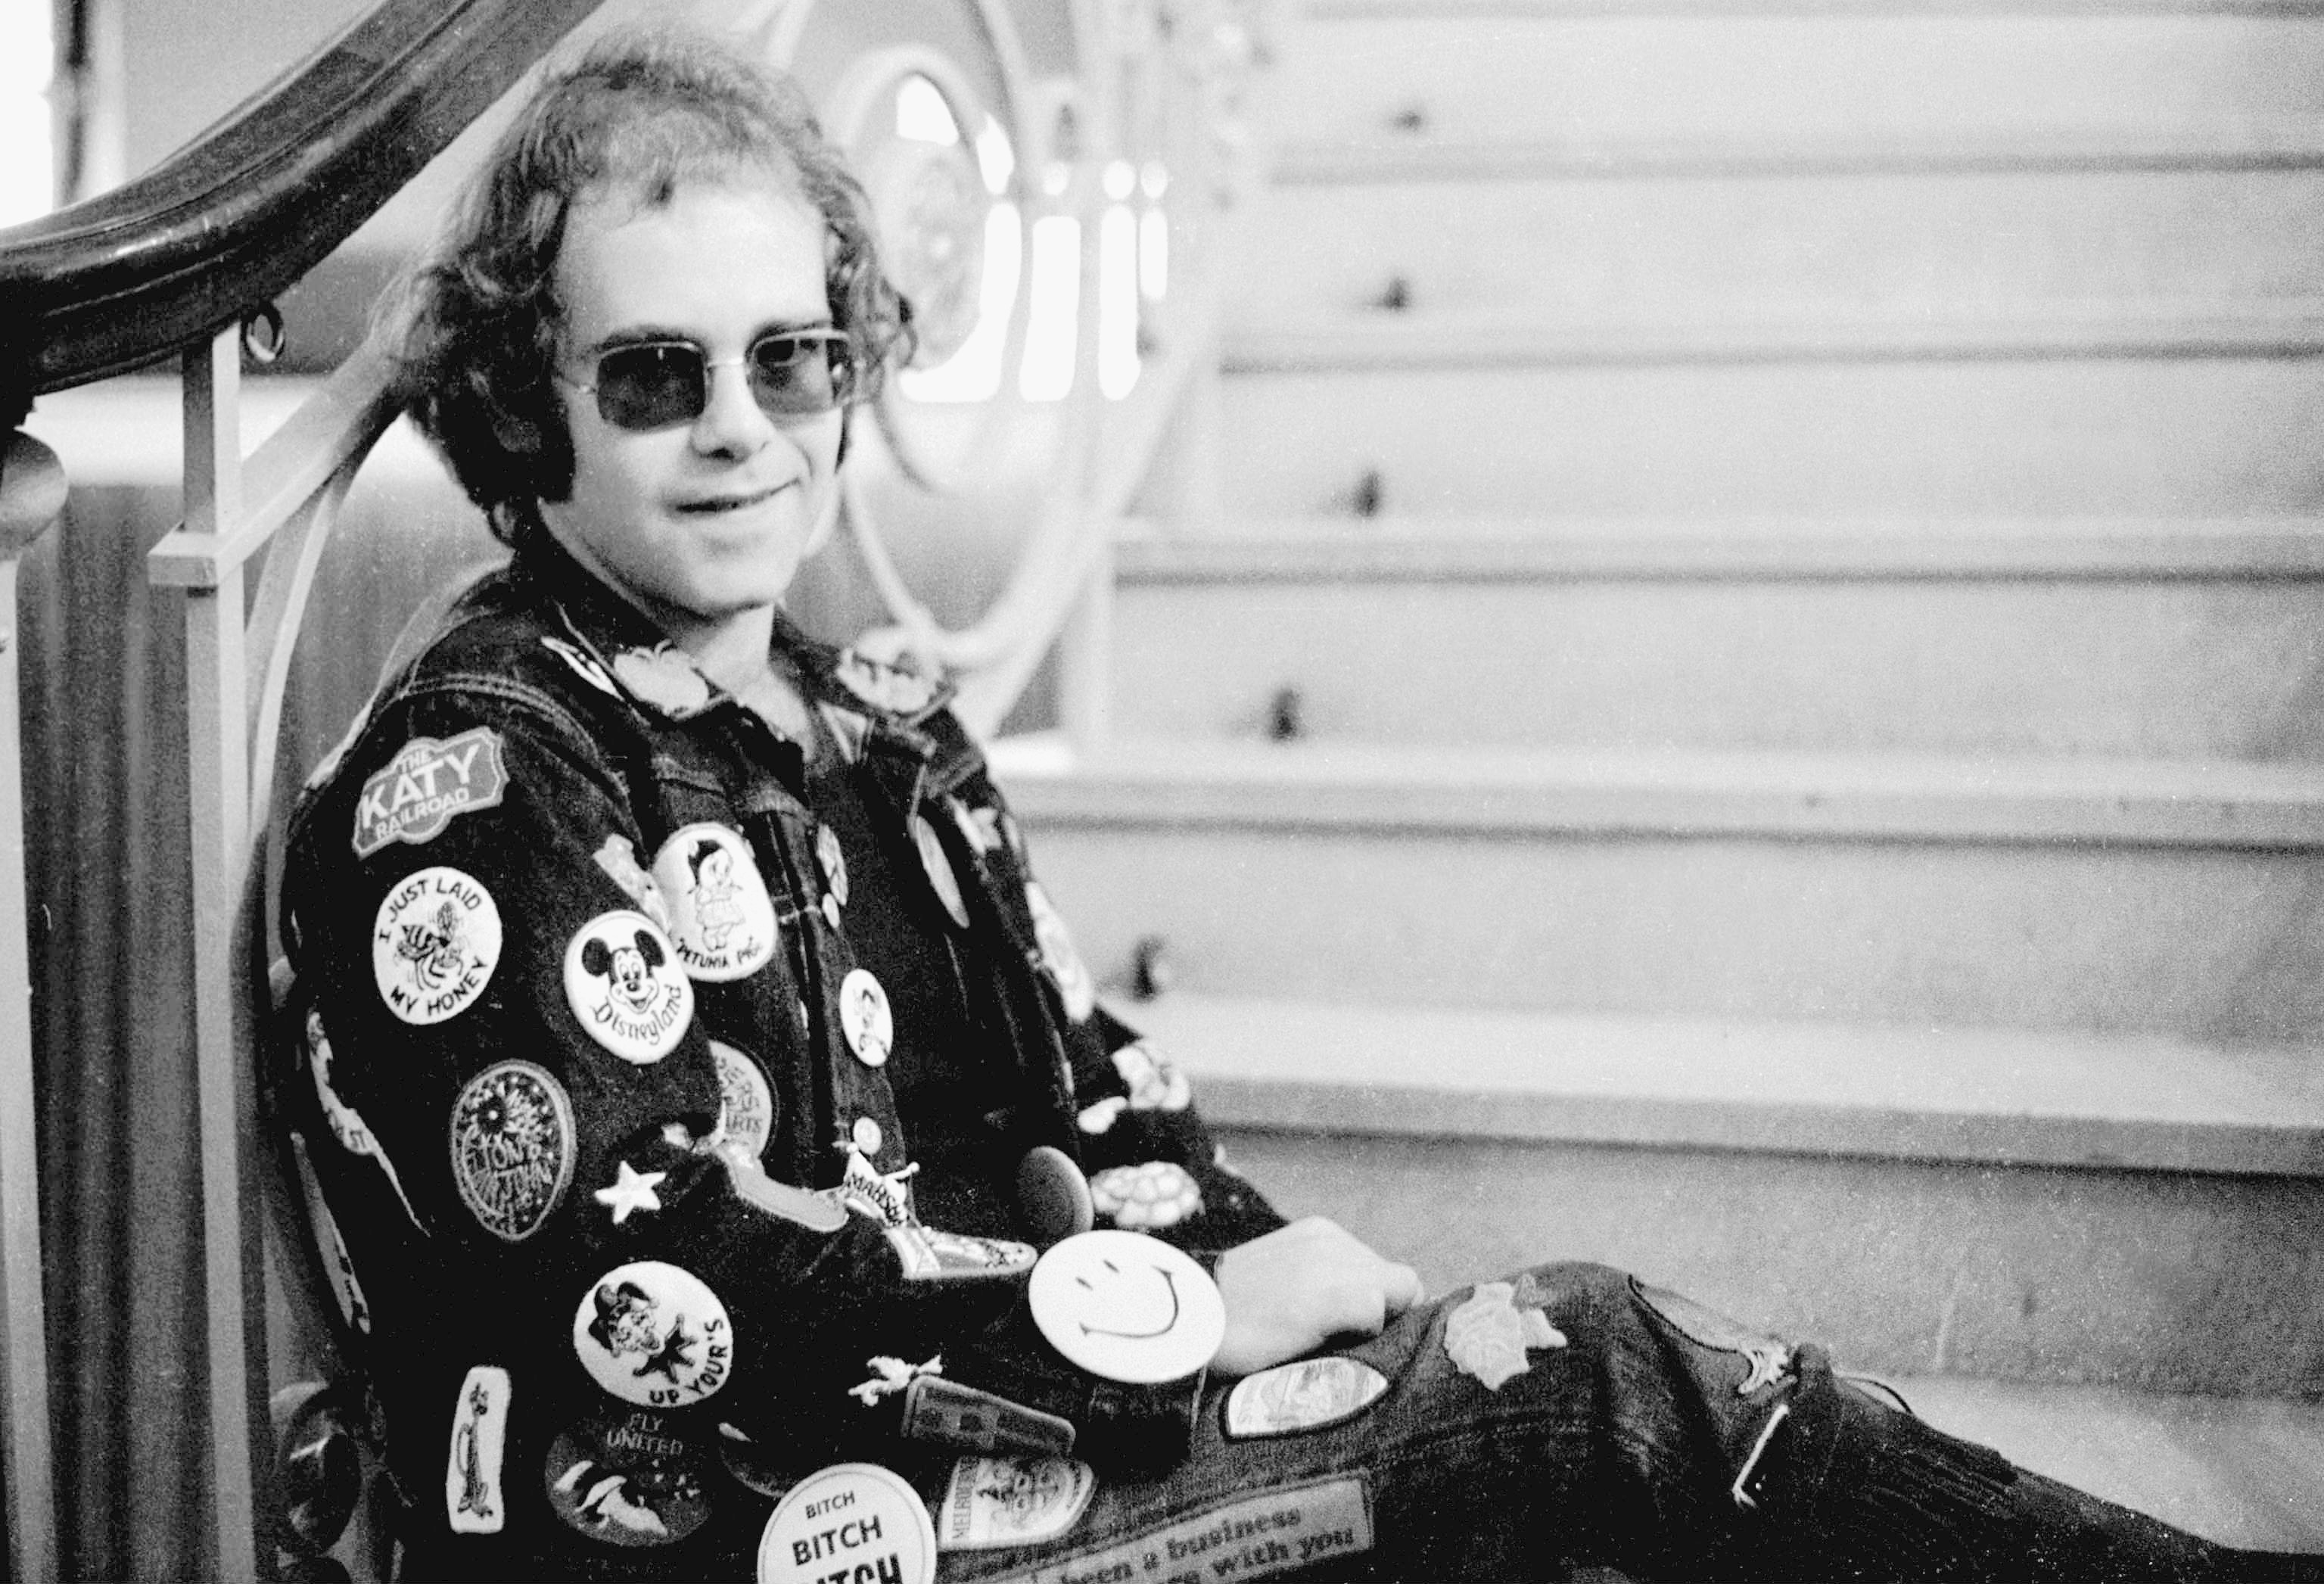 Elton John sitting on stairs